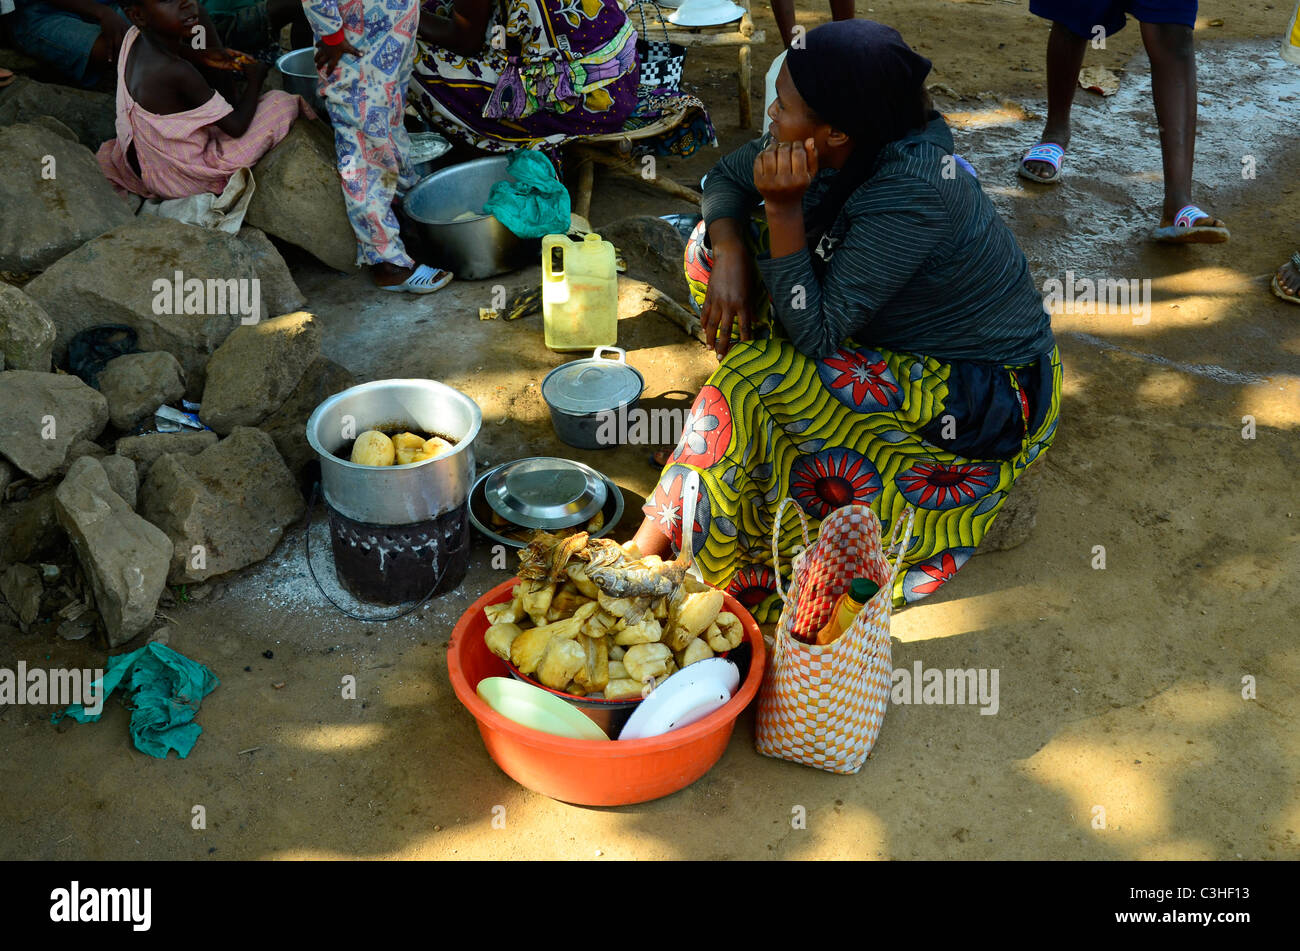 Woman preparing food à côté de route à Beni, l'Est de la République démocratique du Congo en janvier 2011. Banque D'Images